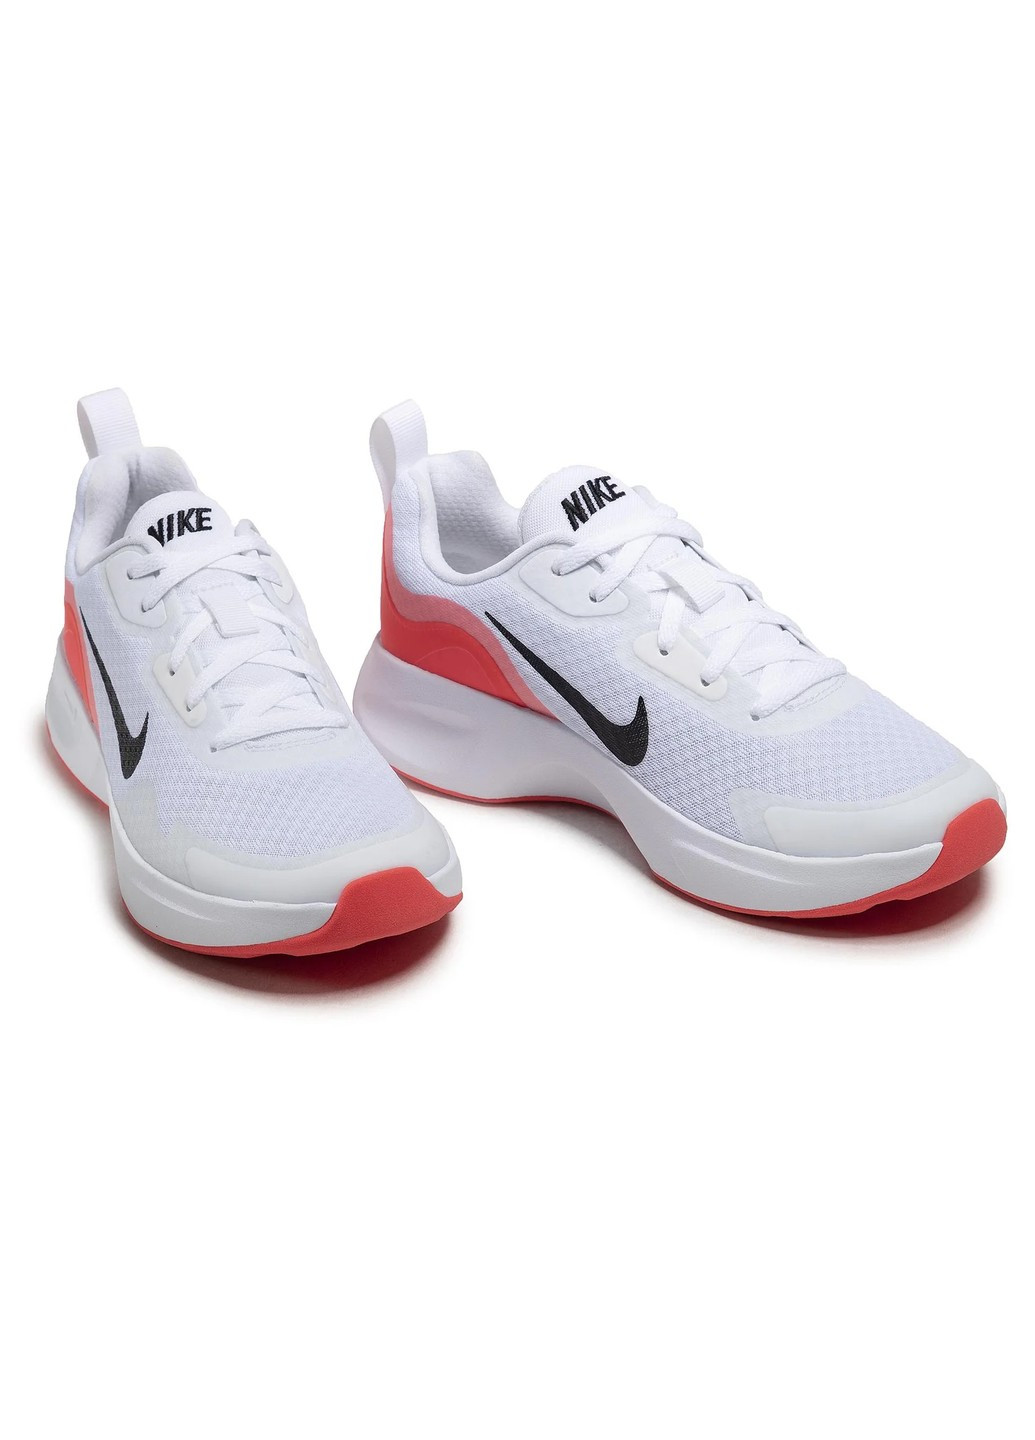 Белые кроссовки женские Nike